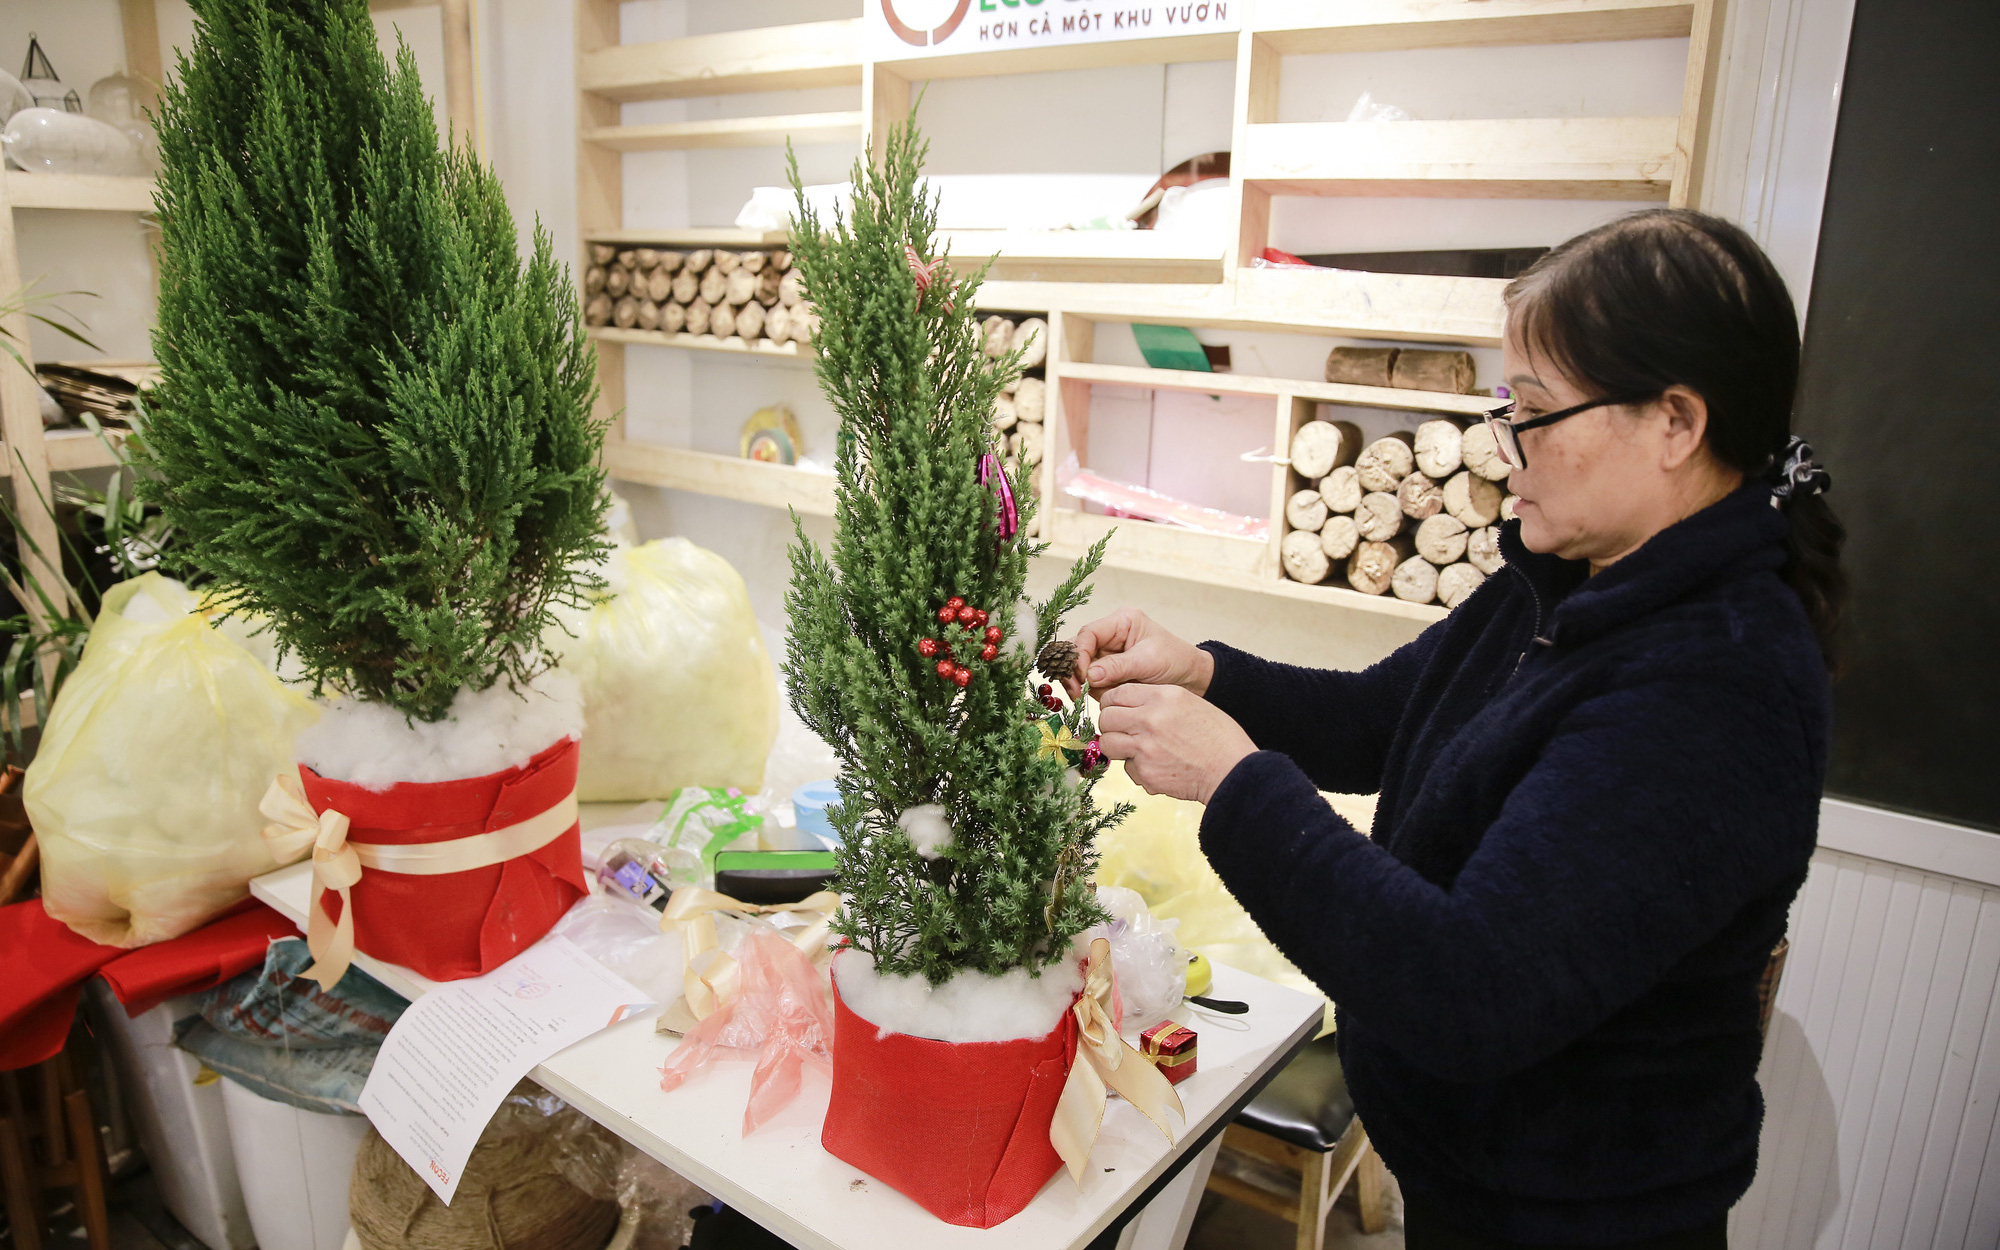 Giá chỉ từ 100.000 đồng, “bản sao” của cây thông thật đắt khách dịp Giáng sinh 2020